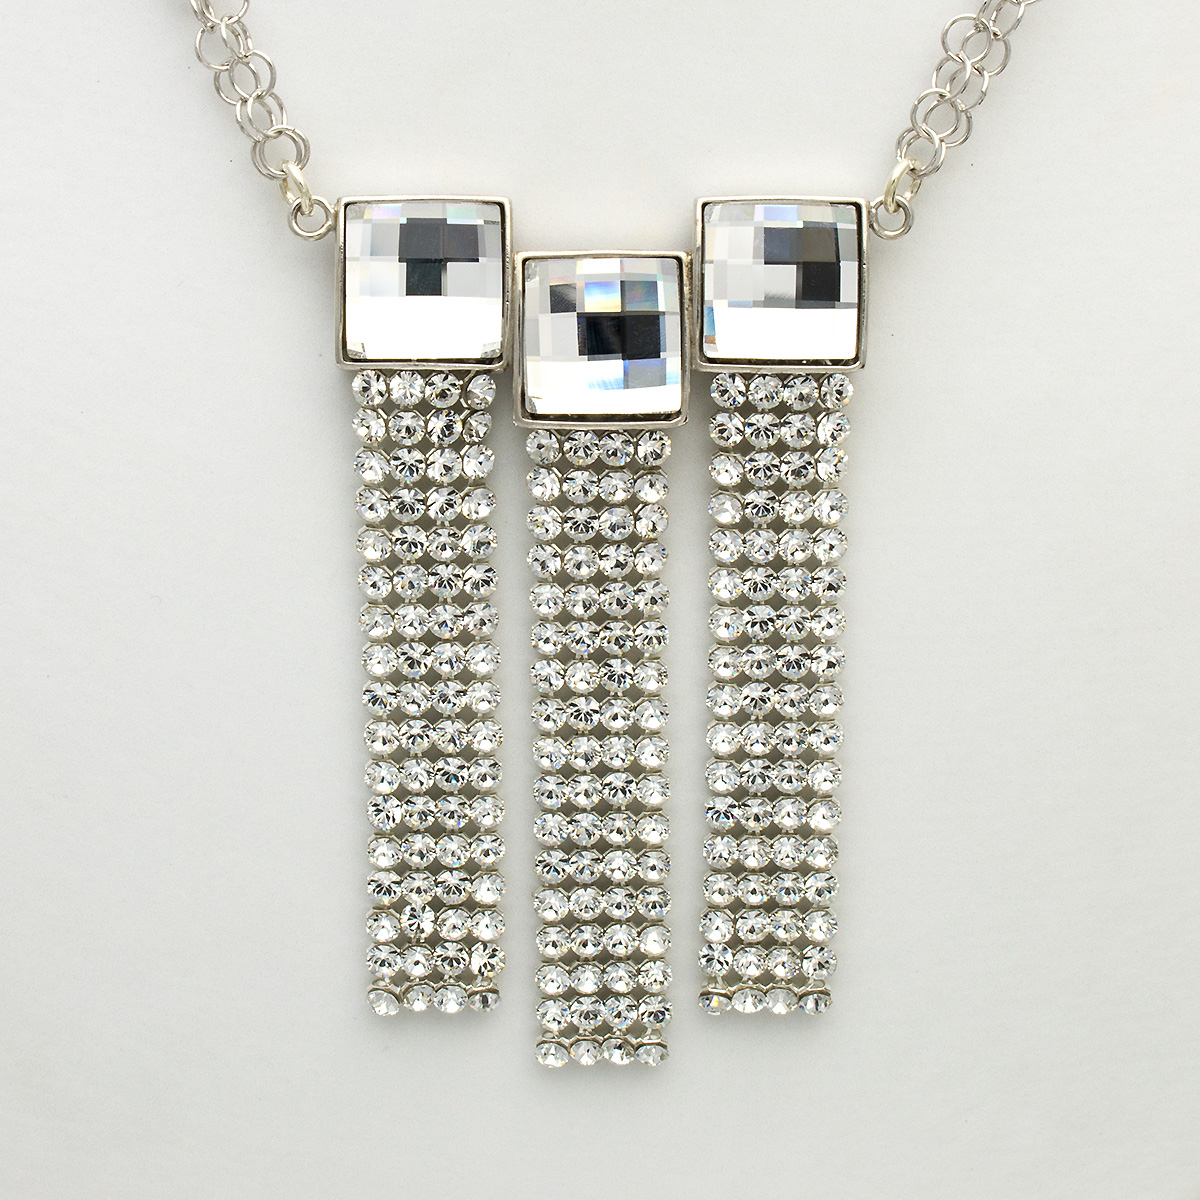 Spark Silver Jewelry Collier Elegance mit Swarovski Elements weiss